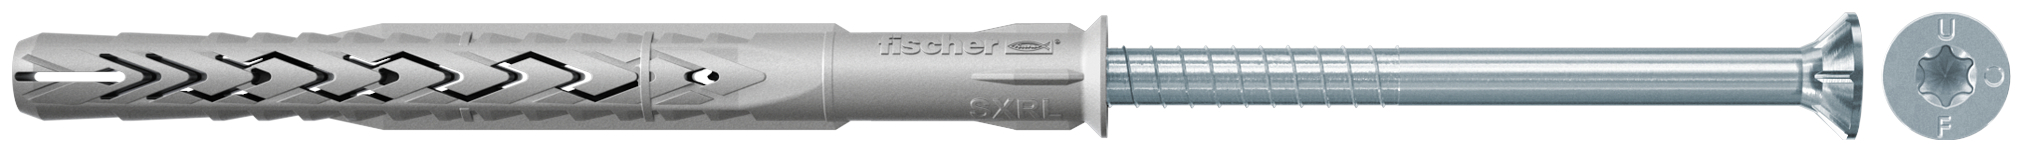 fischer Tasselli prolungati SXRL 14X100 T (1 Pz.) Tassello prolungato in nylon con marcatura CE con vite premontata T.S.P. impronta torx fie2559